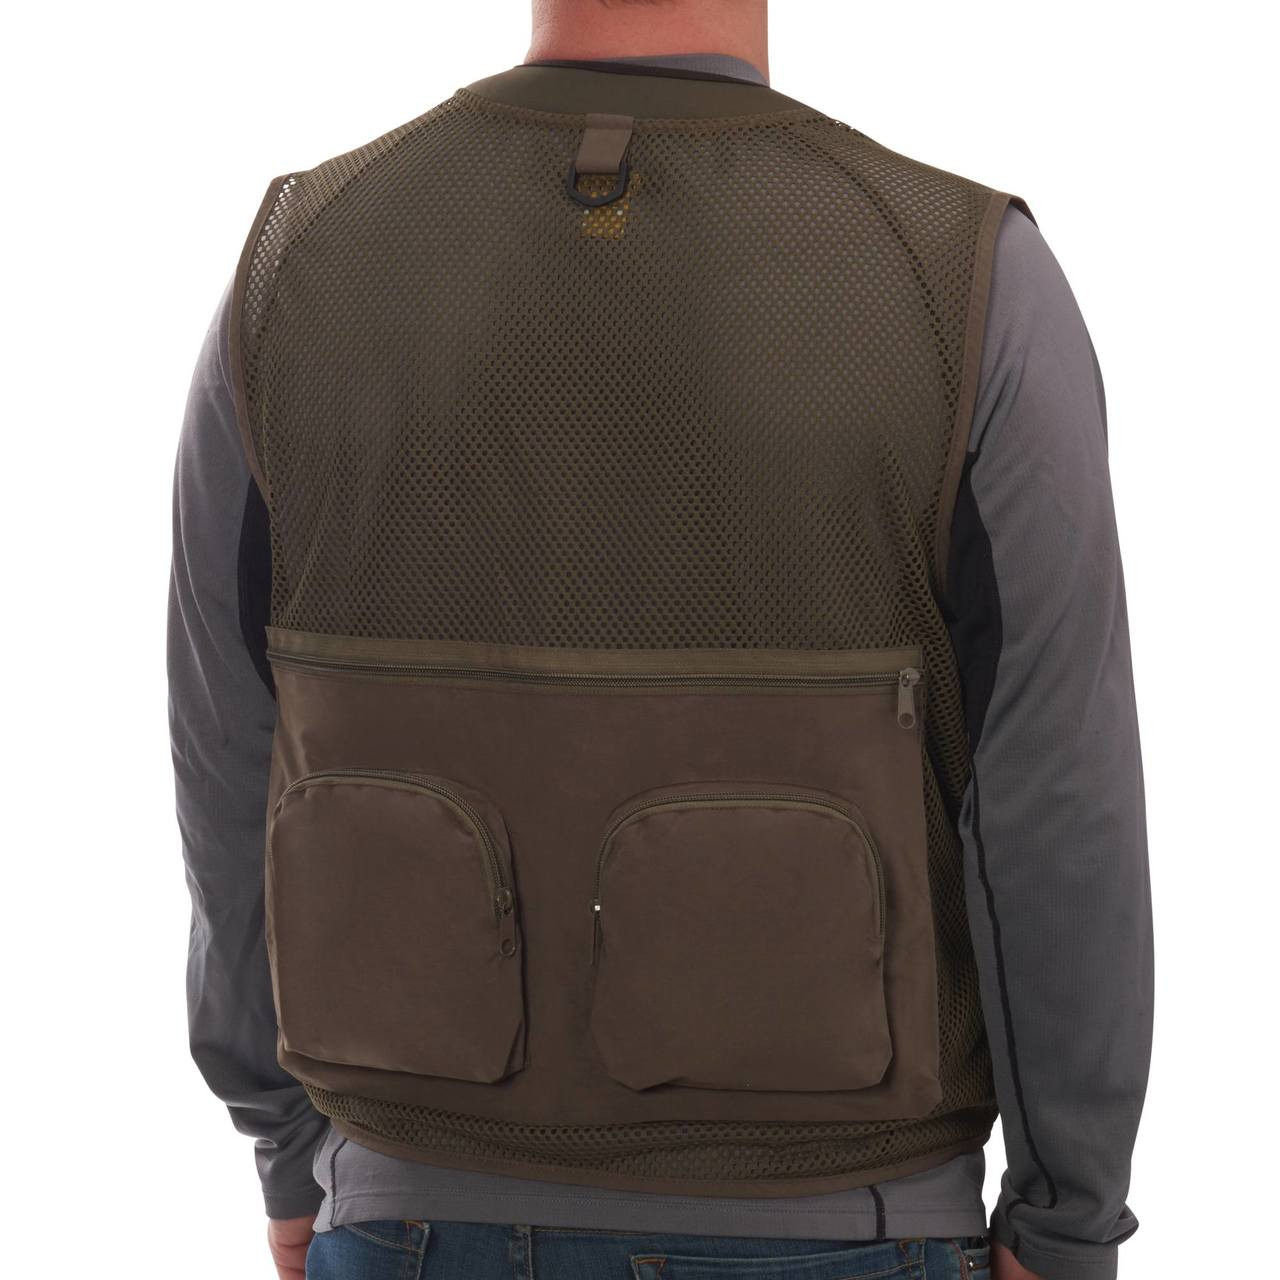 SJK Leader 27 Pocket Mesh Back Fishing Vest, Size XL